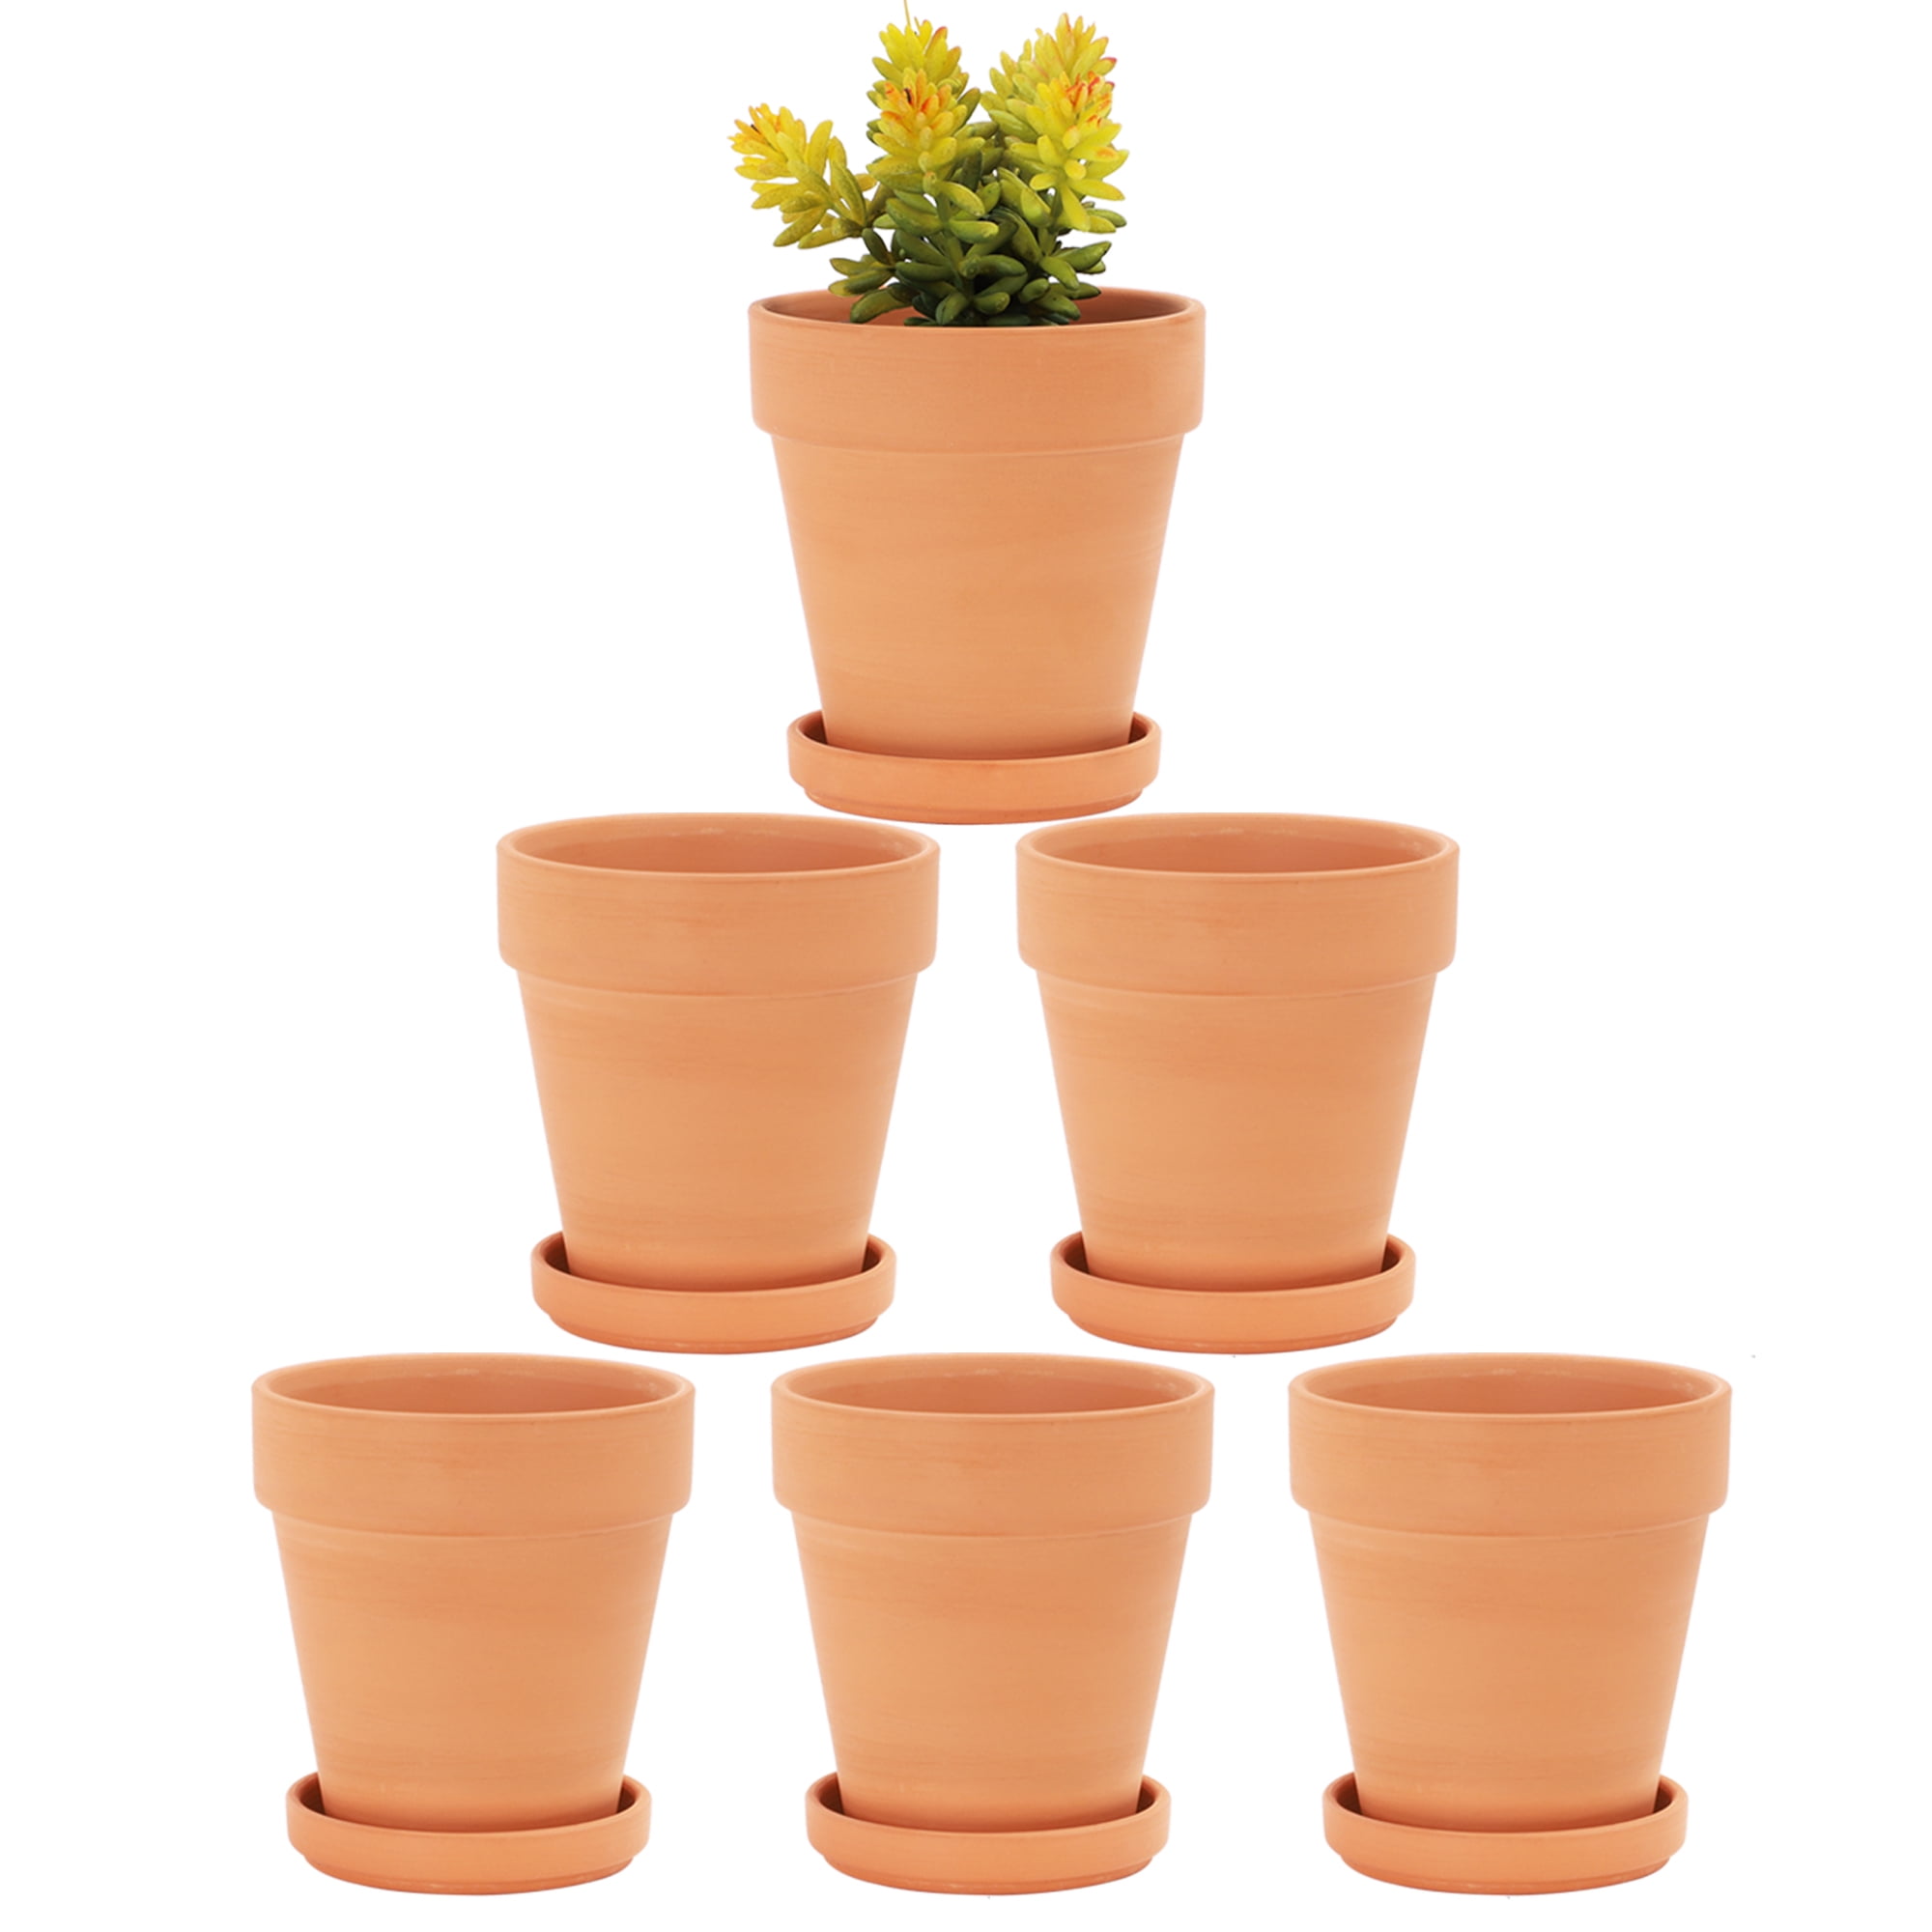 Terracotta Clay Cactus Succulent Indoor Garden Flower Planter Bowl 6 Pack Pots 